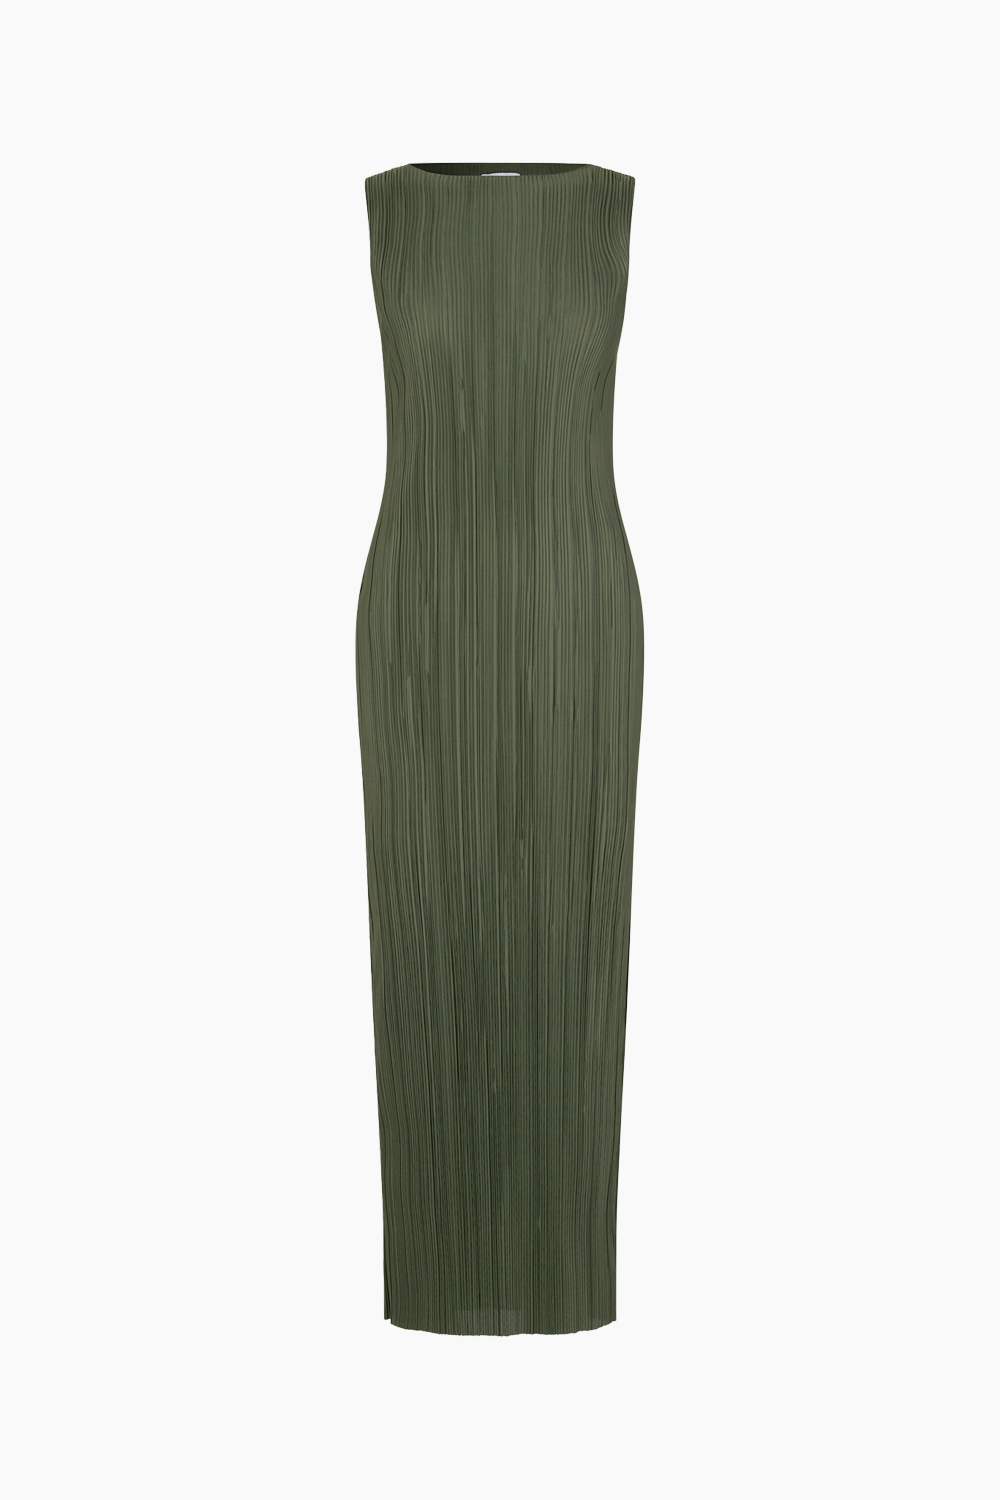 Encomo SL Dress 7089 - Four Leaf Clover - Envii